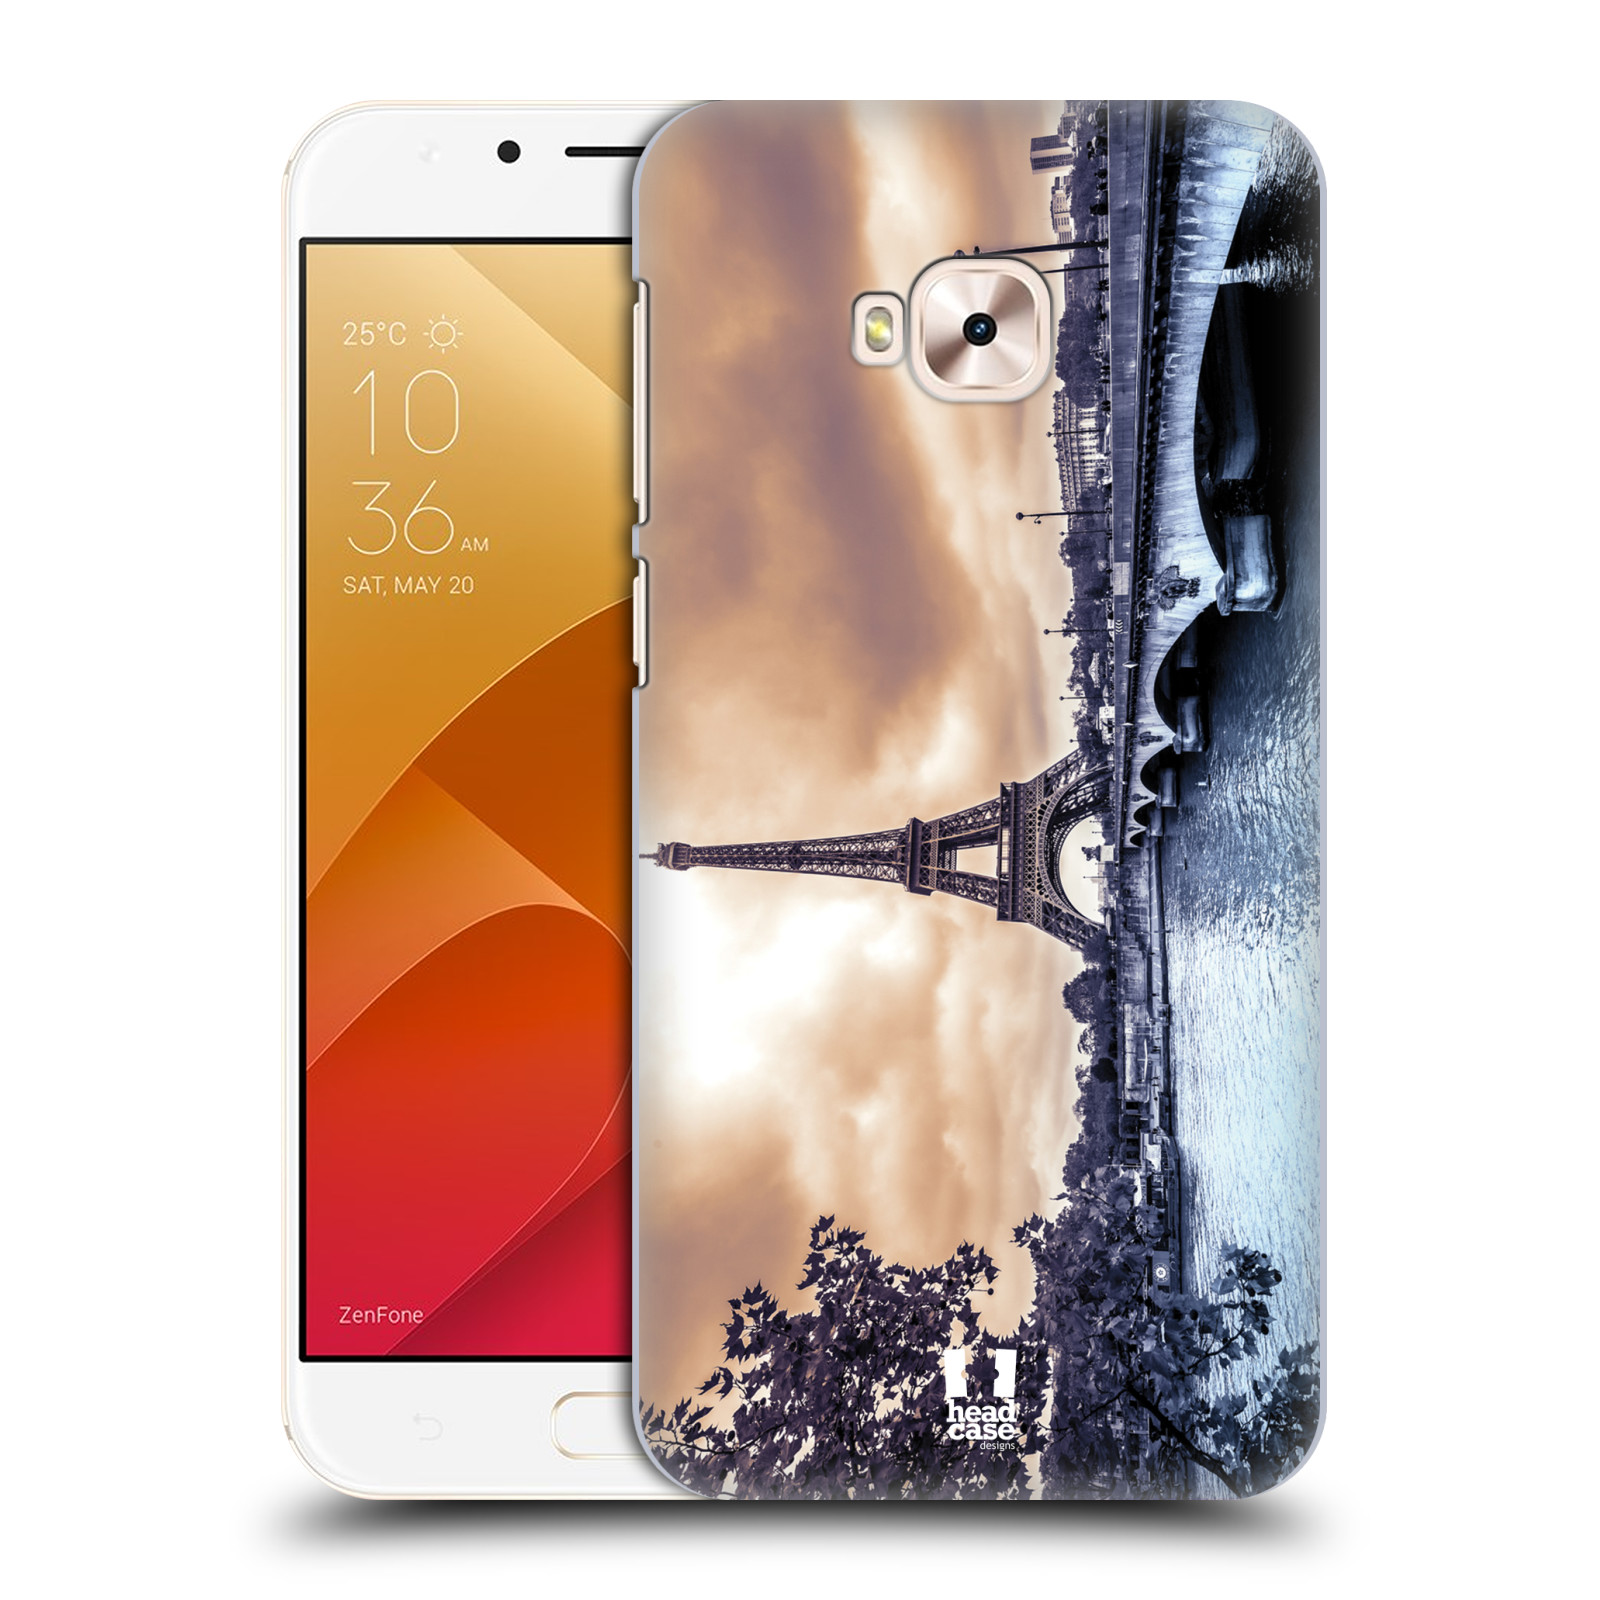 HEAD CASE plastový obal na mobil Asus Zenfone 4 Selfie Pro ZD552KL vzor Panoramata měst horizontální foto DEŠTIVÝ DEN V PAŘÍŽI, FRANCIE